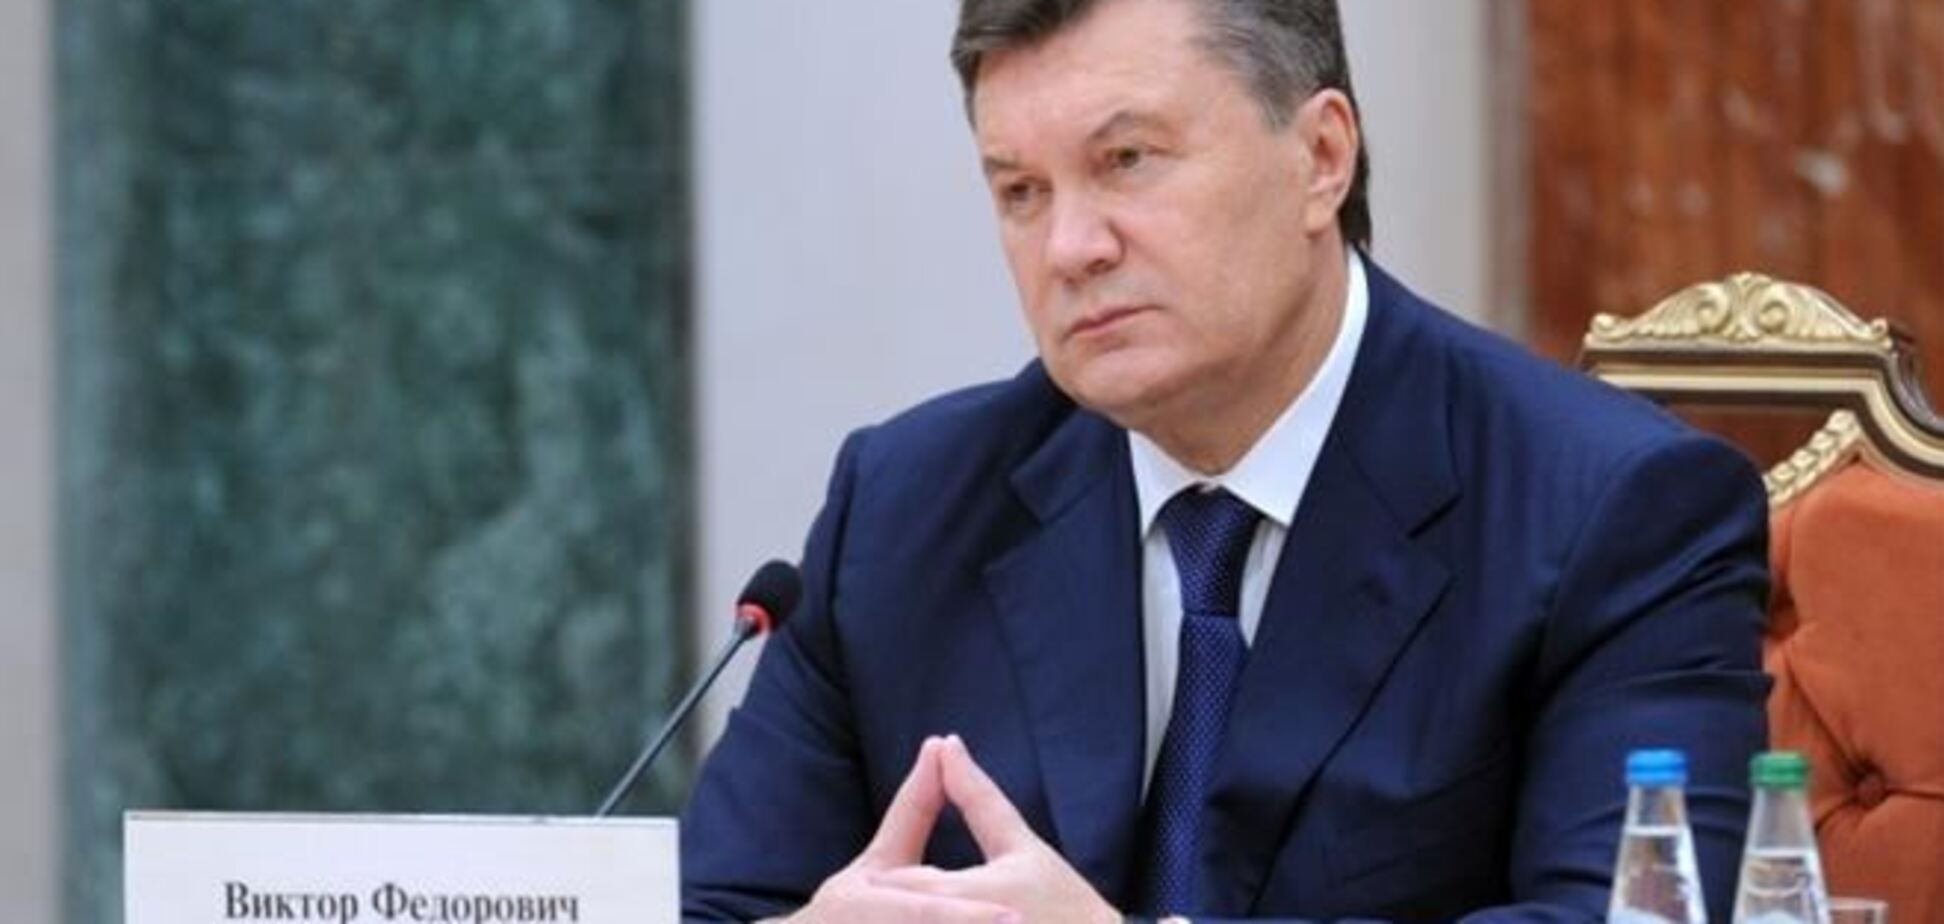 На сайте Белого дома появилась петиция о санкциях против Януковича